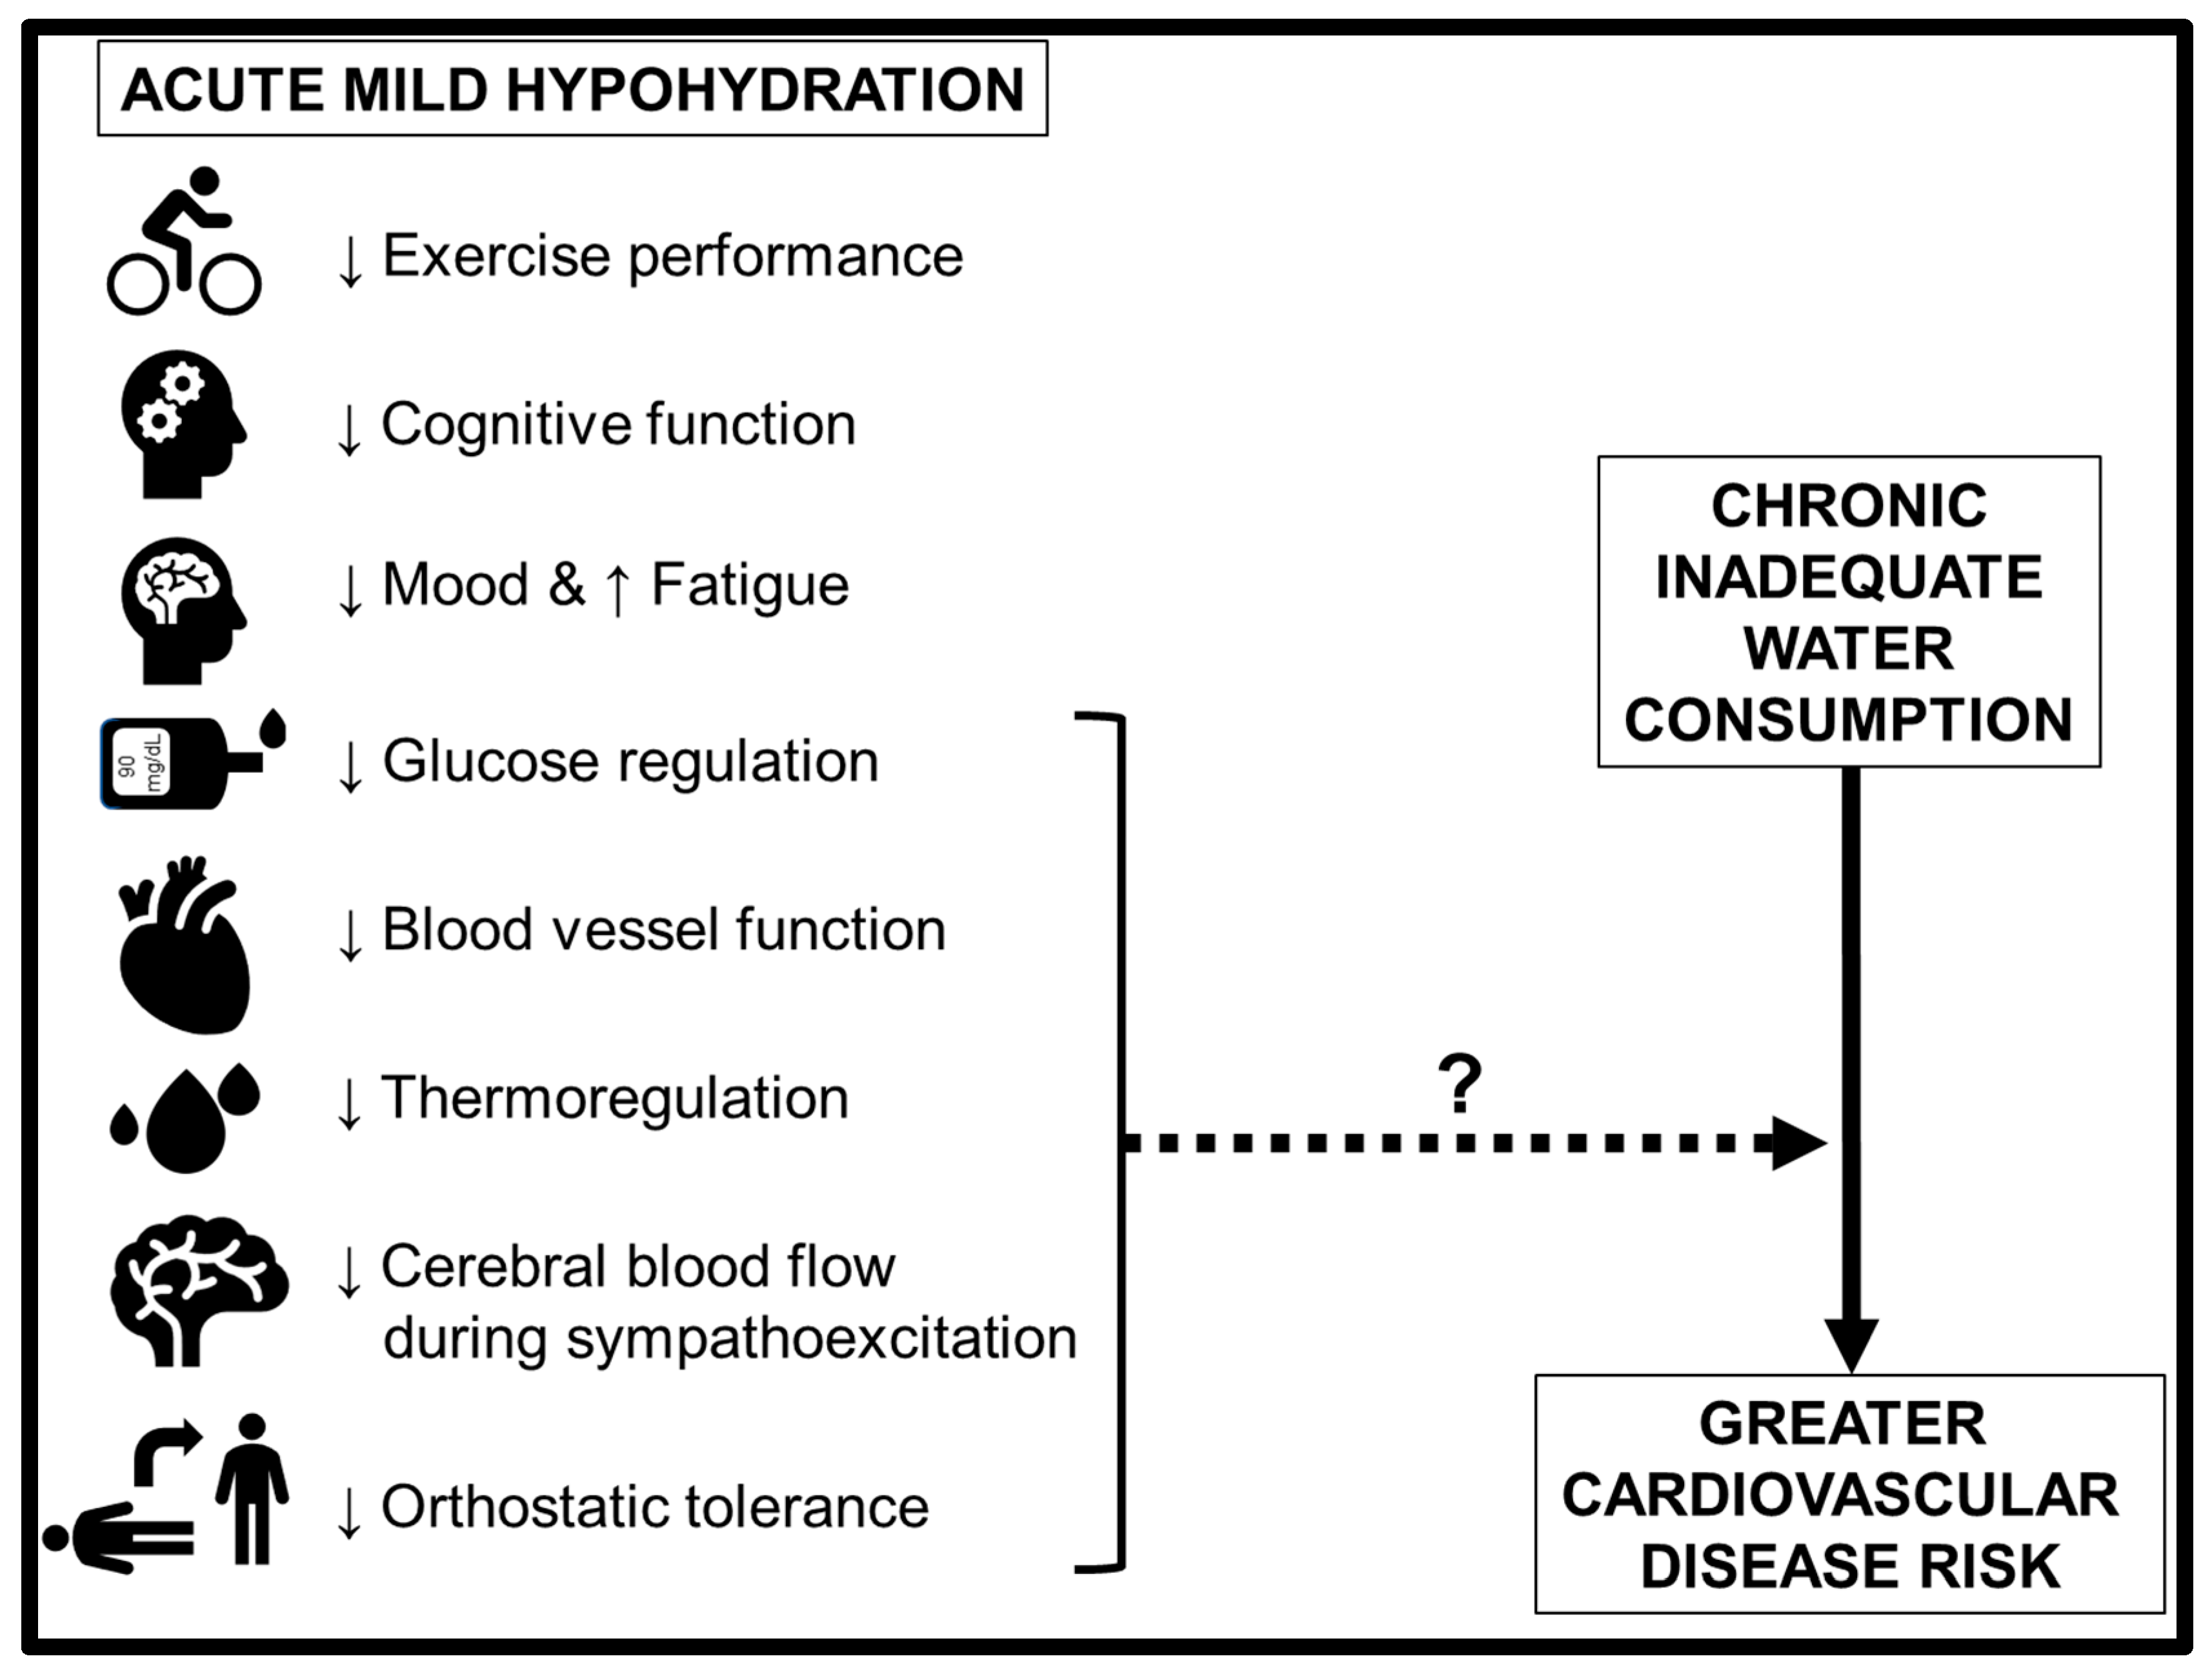 Hydration and cardiovascular health